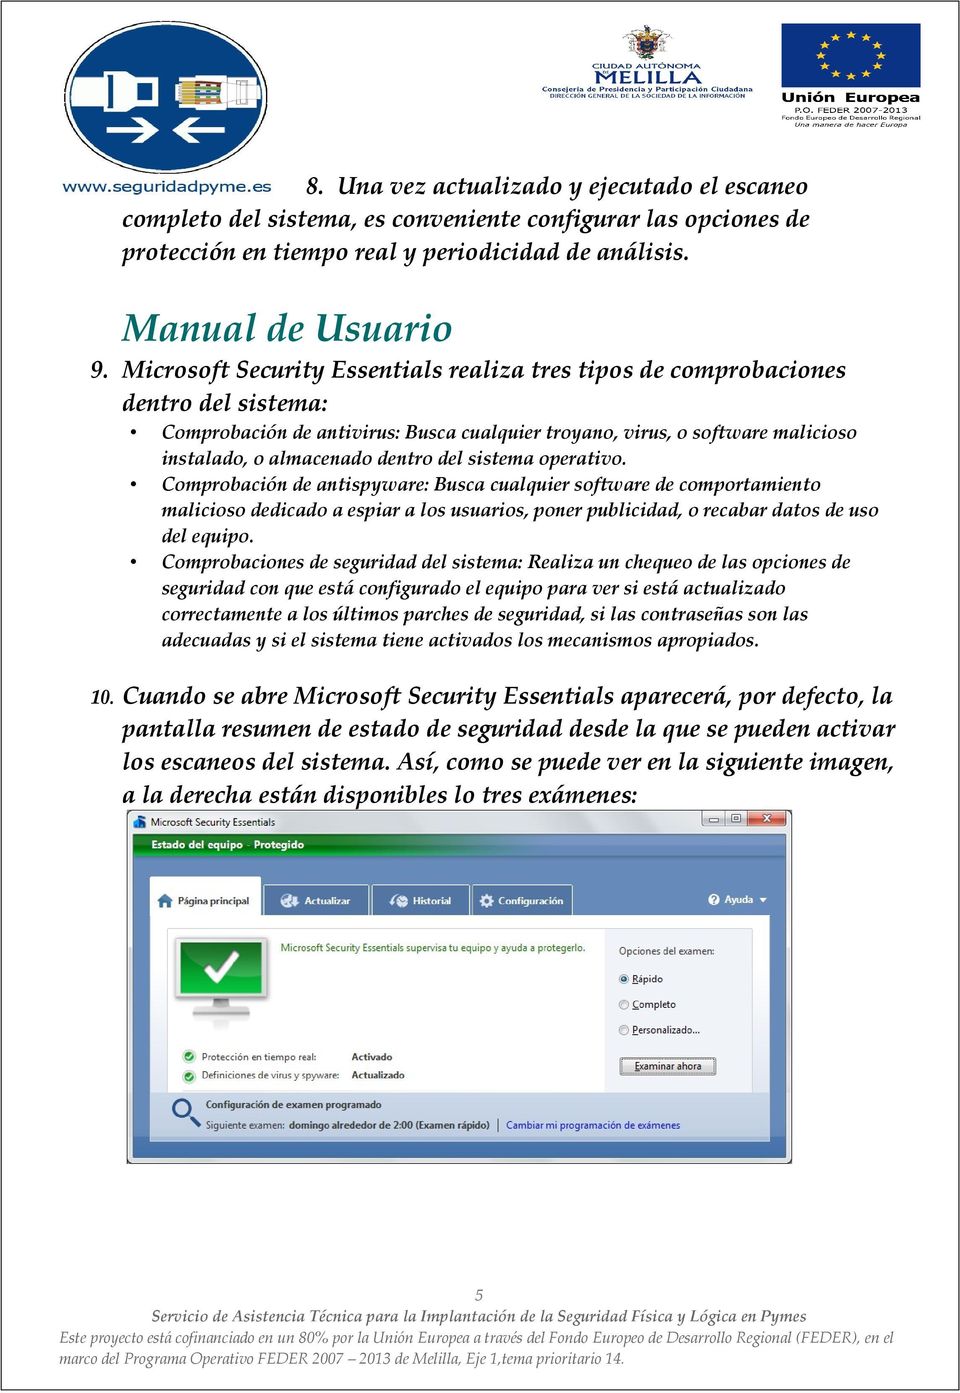 Comprobación de antivirus: Busca cualquier troyano, virus, o software malicioso instalado, o almacenado dentro del sistema operativo.